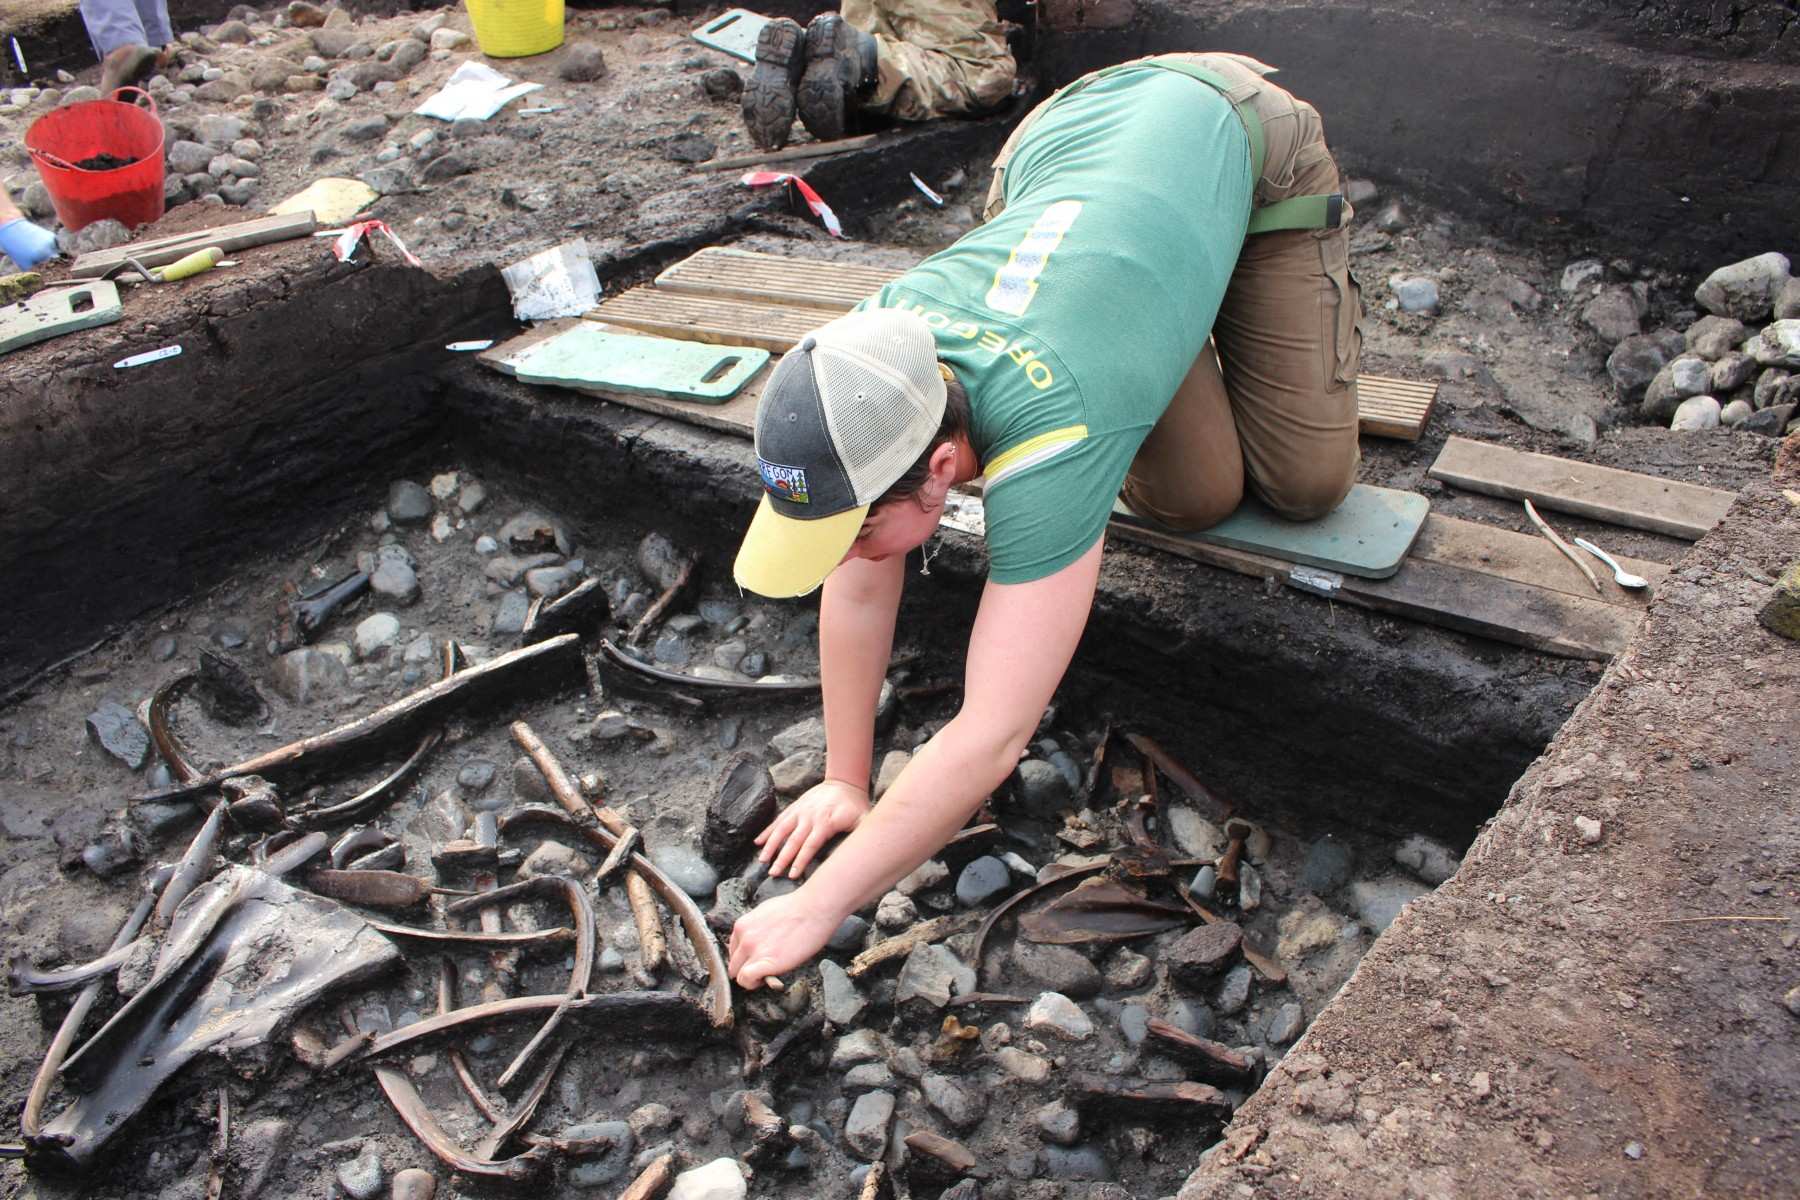 Zvířecí kosti, nástroje a zbraně spolu se vzácnými důkazy o zpracování dřeva byly objeveny během vykopávek na místě poblíž Scarborough